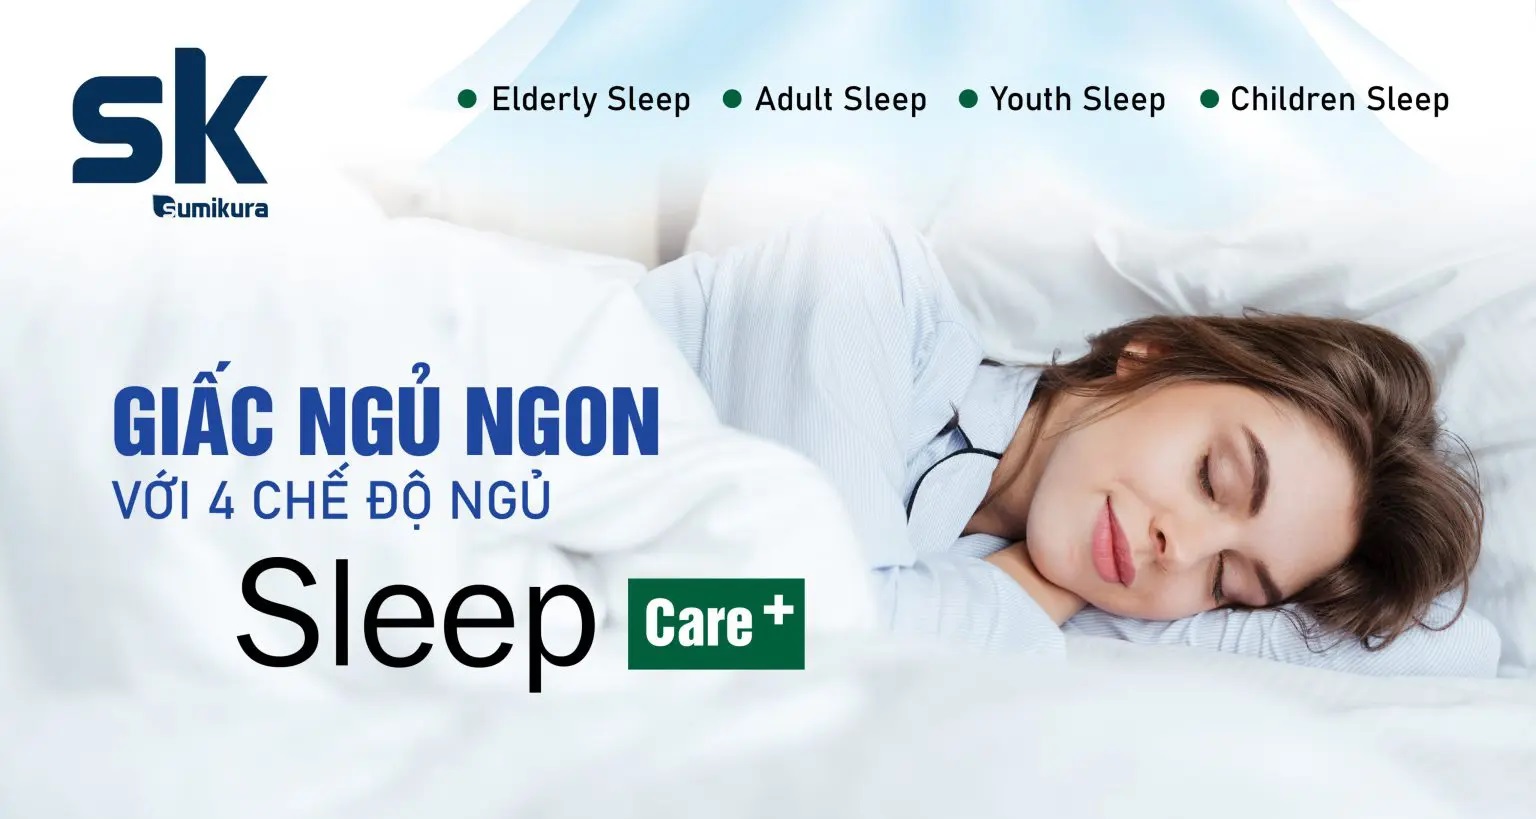 Điều hòa Sumikura Gold chăm sóc người dùng tốt hơn với 4 chế độ ngủ Sleep